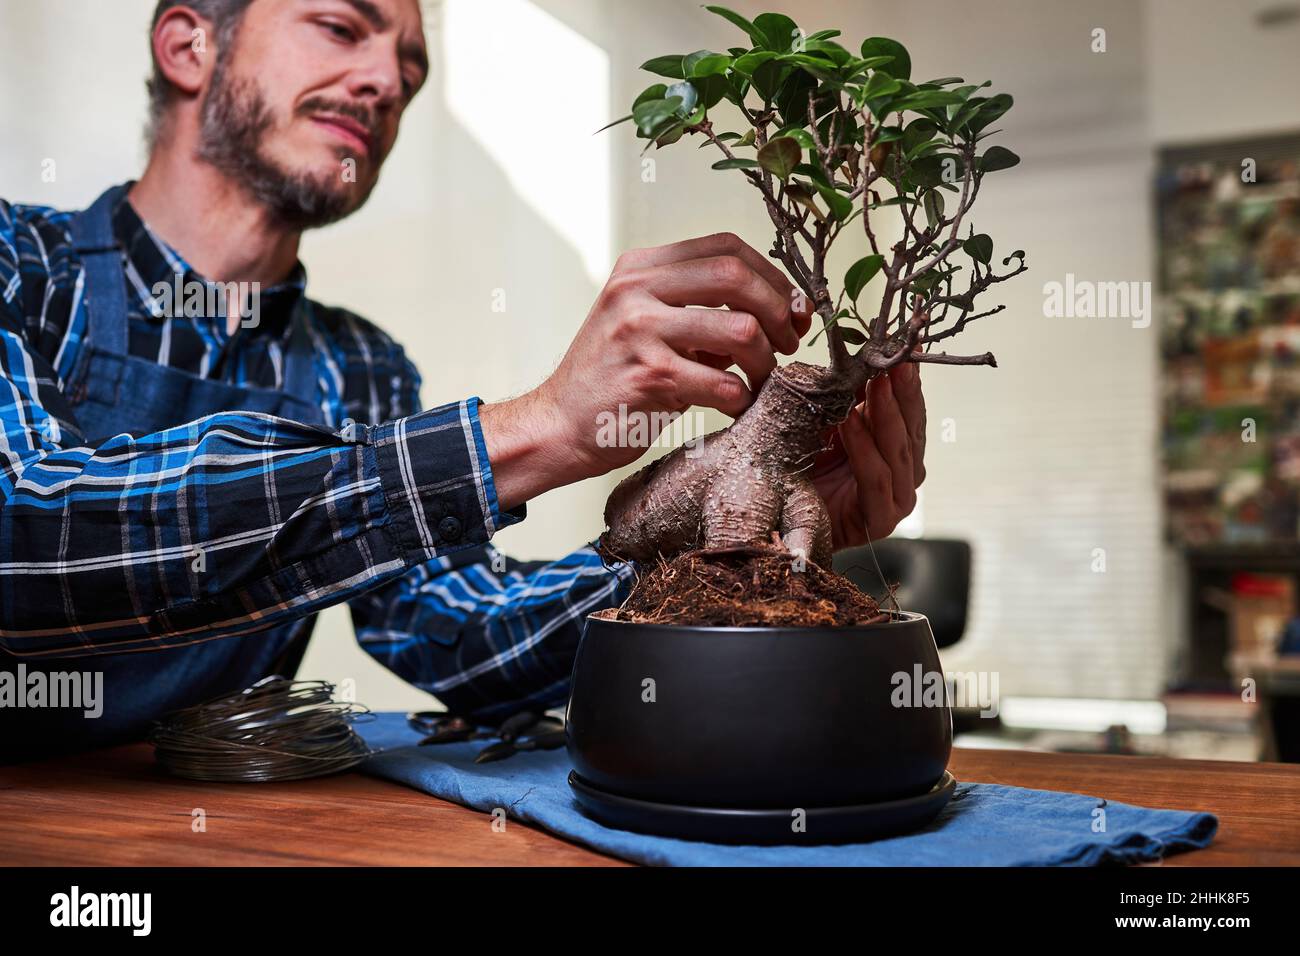 Alambre bonsai fotografías e imágenes de alta resolución - Alamy